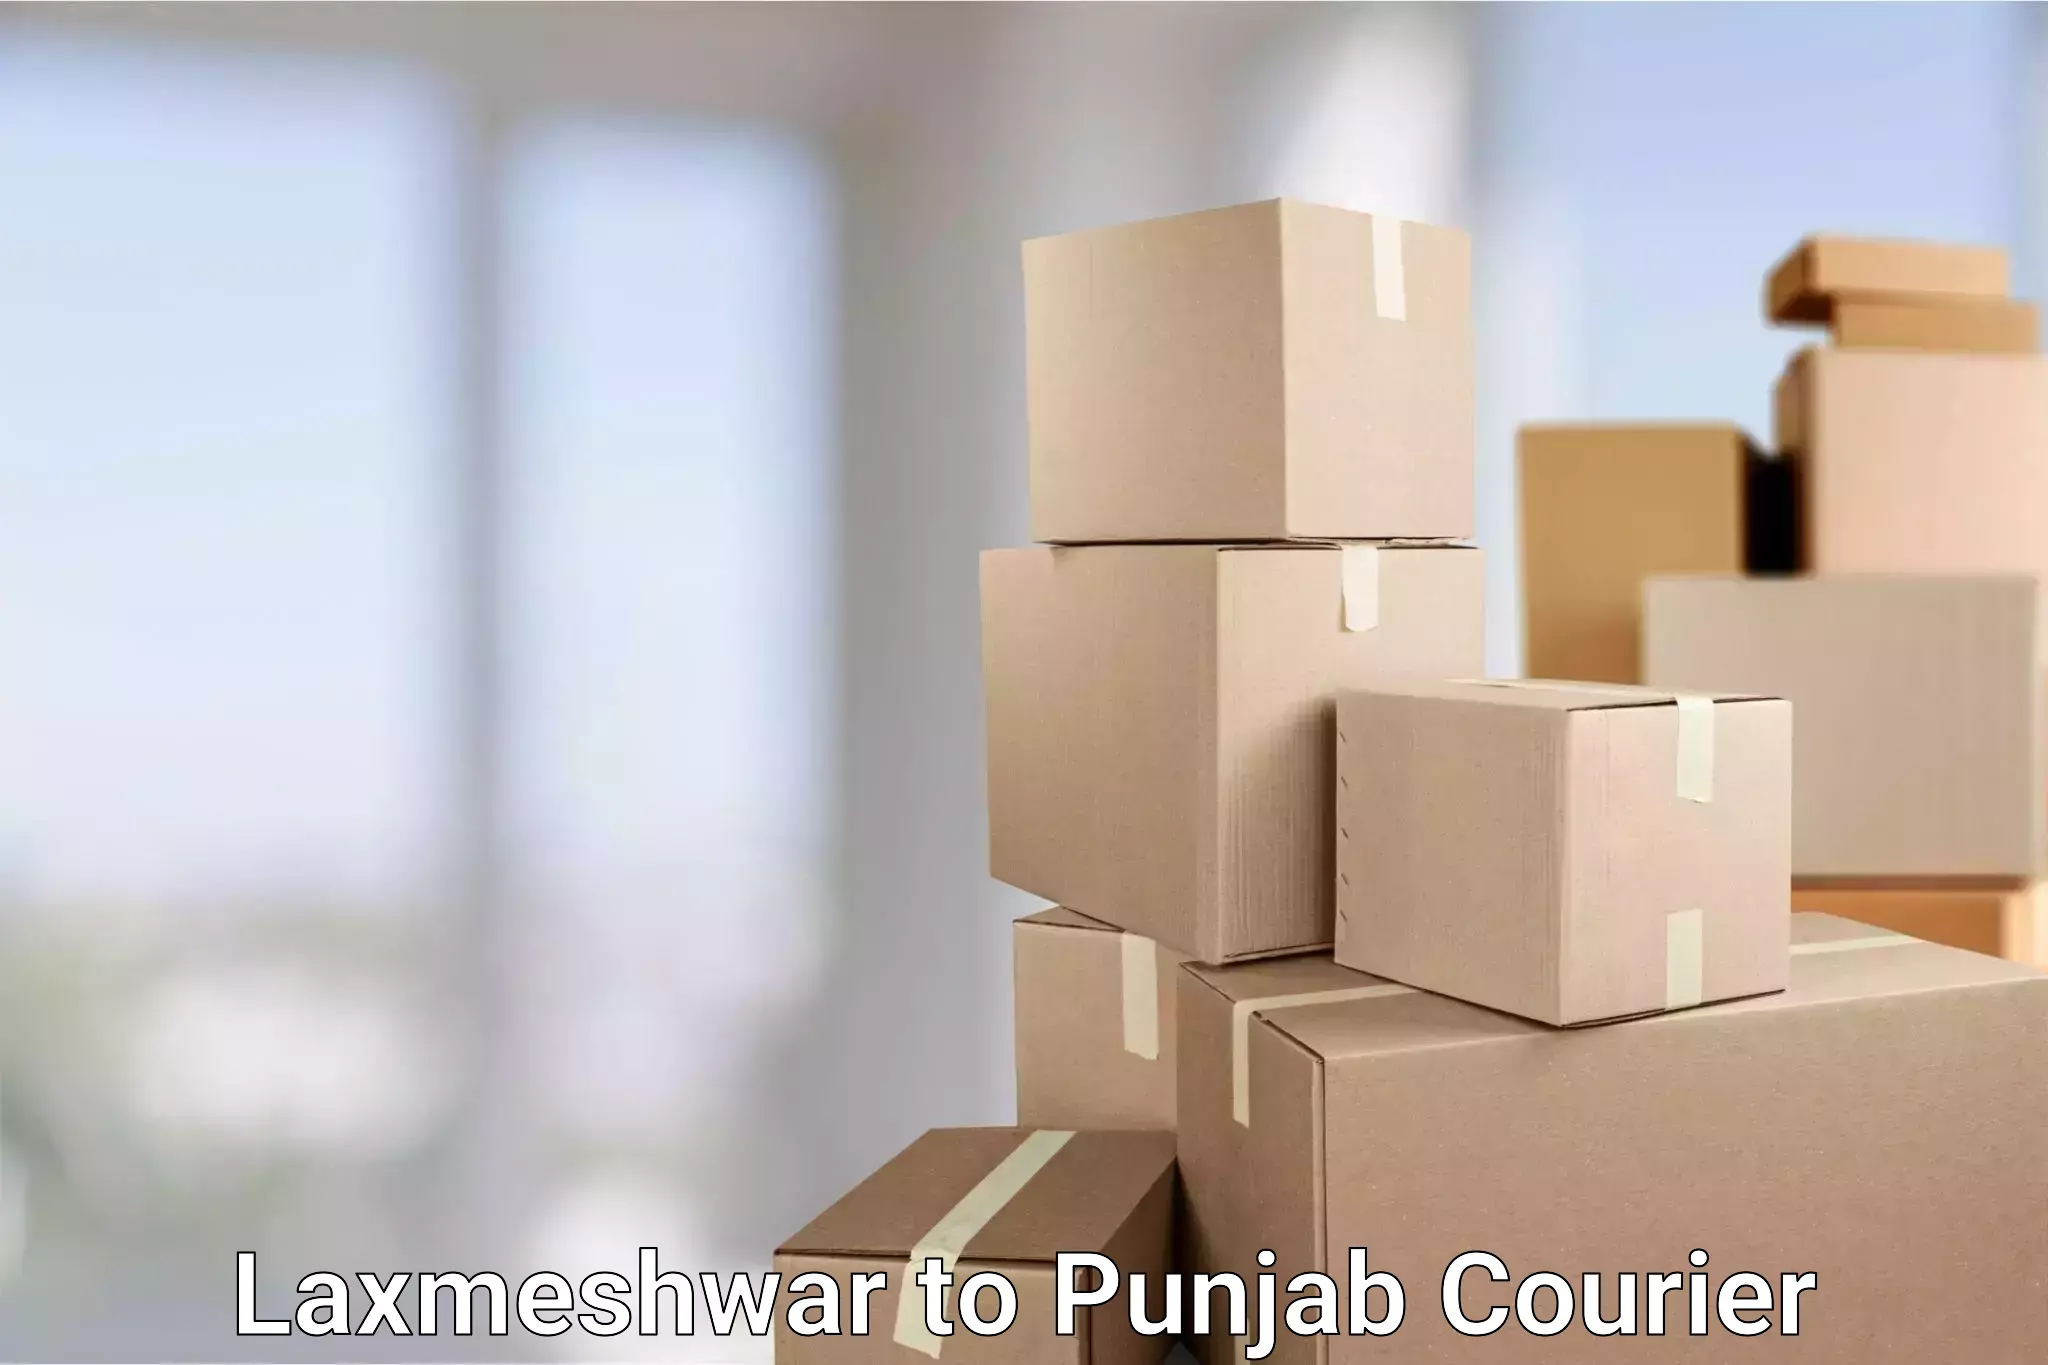 Efficient parcel transport Laxmeshwar to Punjab